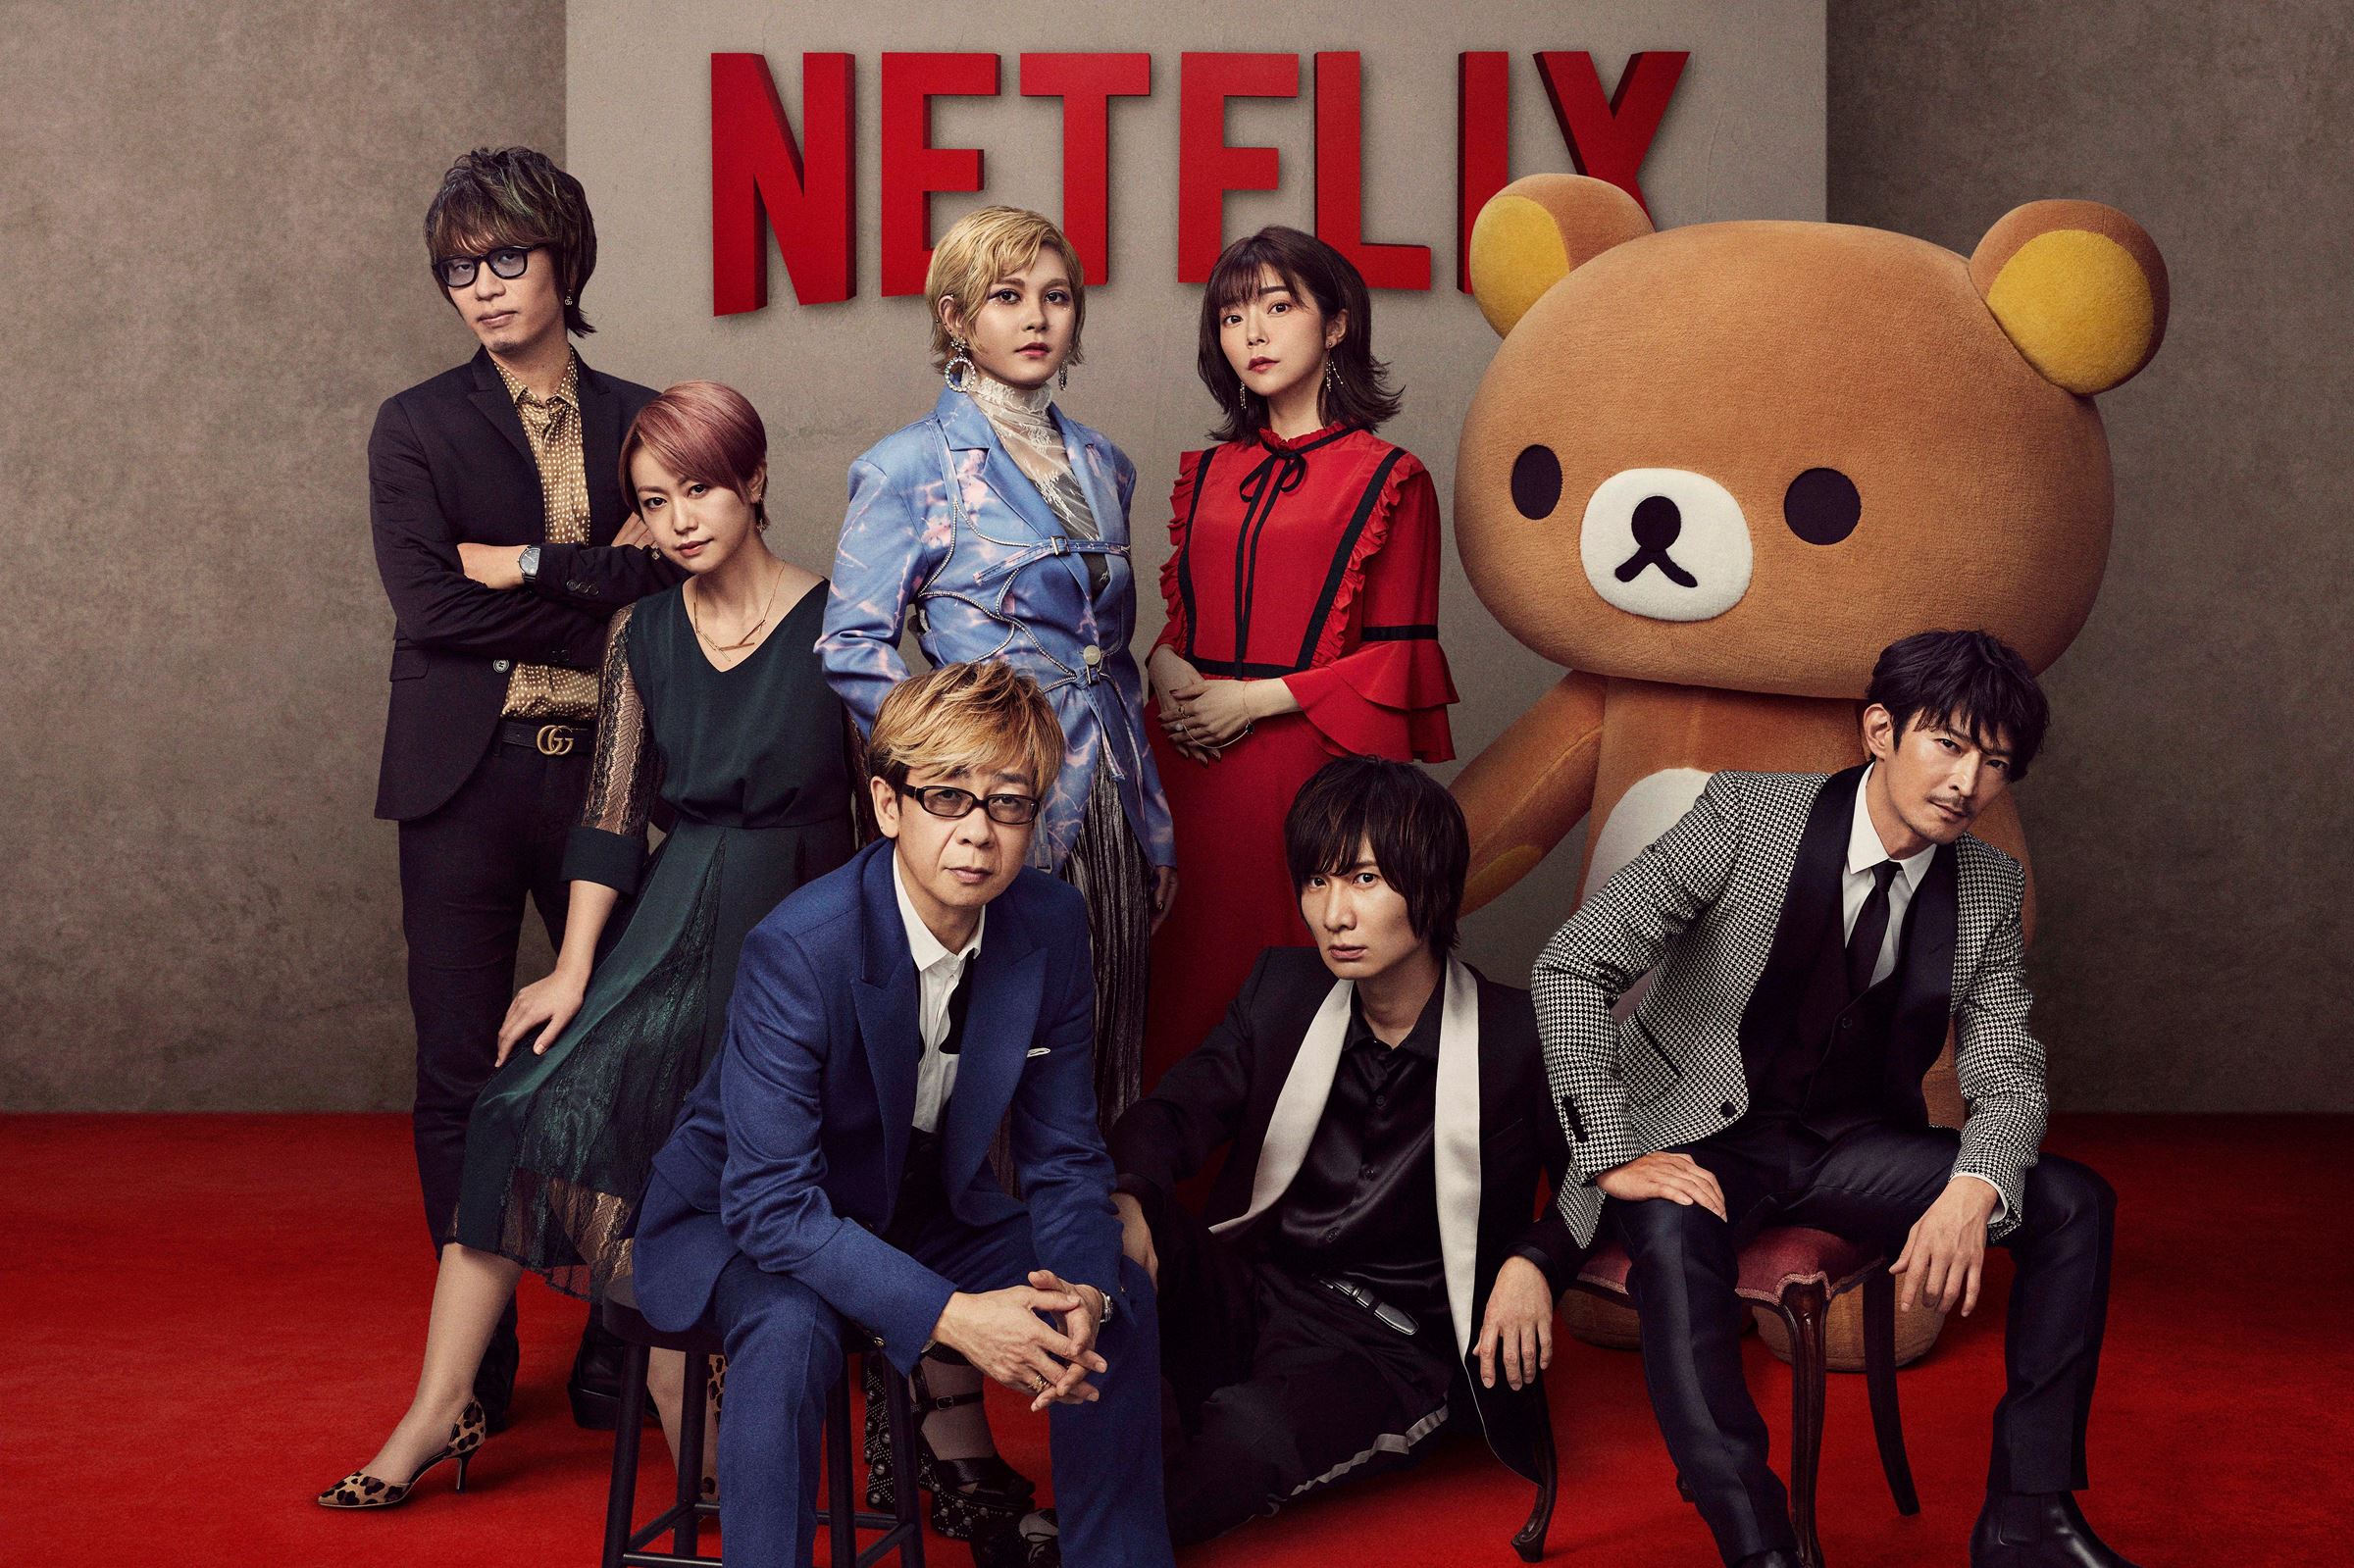 「Netflix Festival Japan 2021」